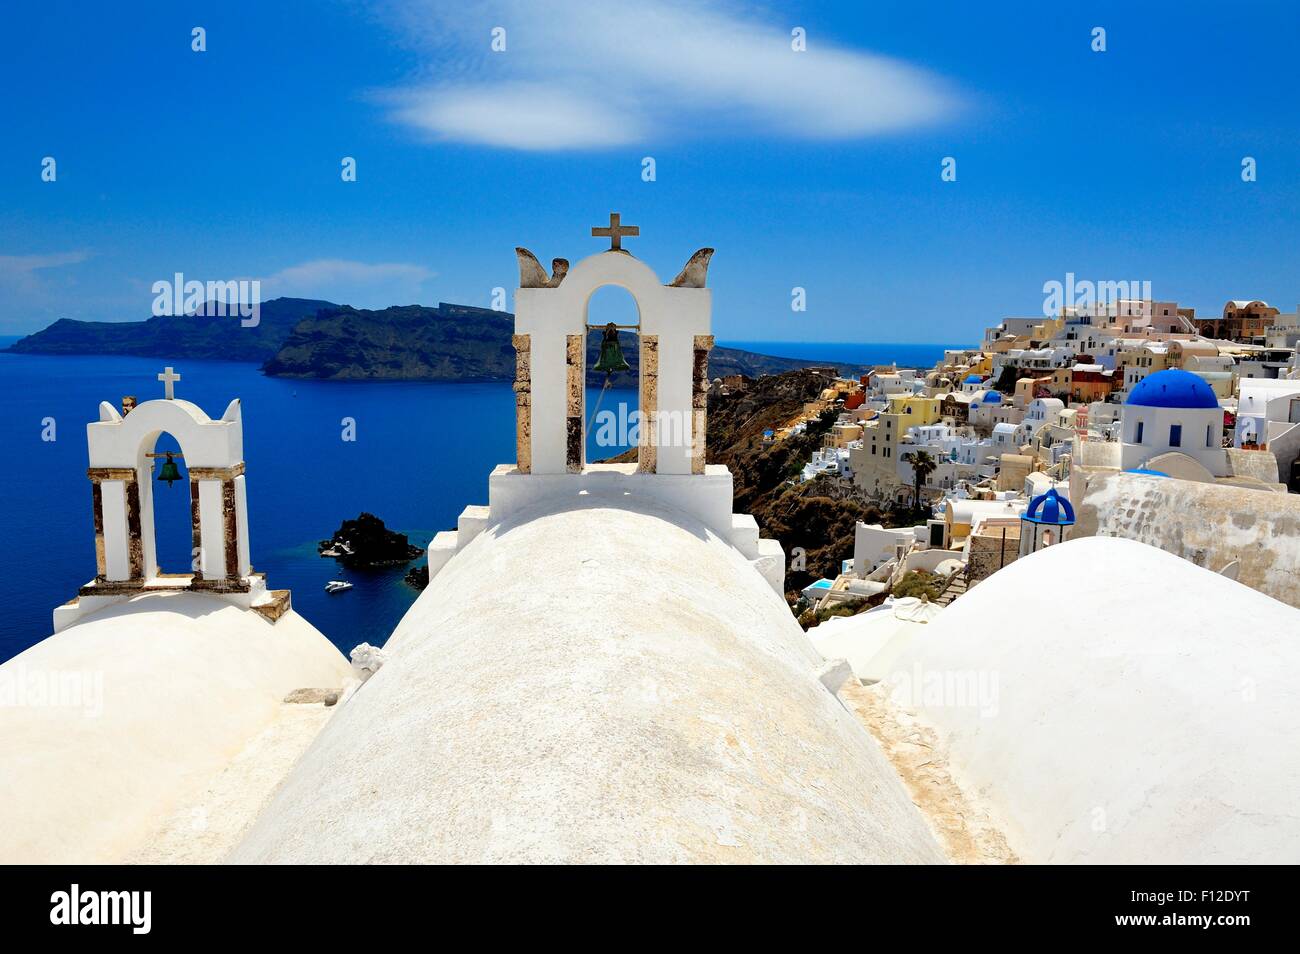 Les clochers de l'église dans le village de Oia Santorini Grèce Banque D'Images